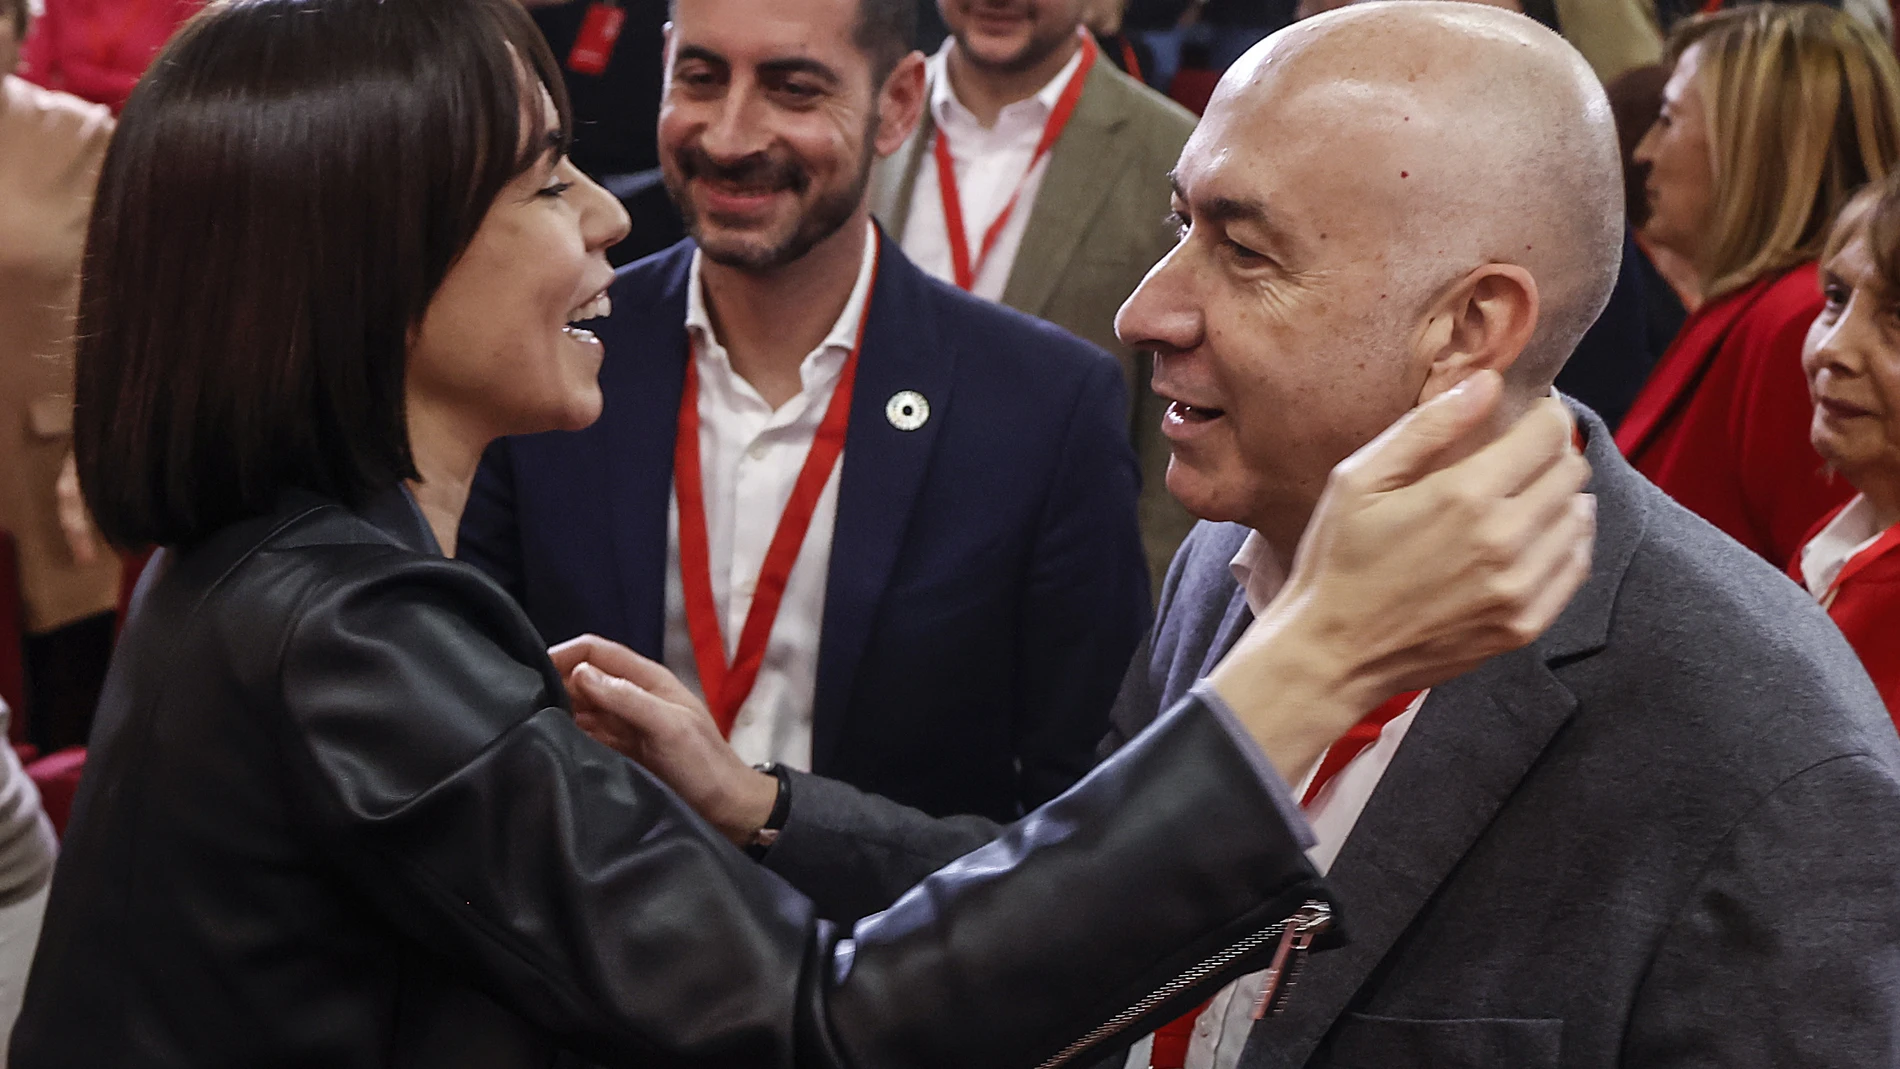 Diana Morant candidata única para liderar el PSOE valenciano tras integrar en su lista a los otros dos candidatos